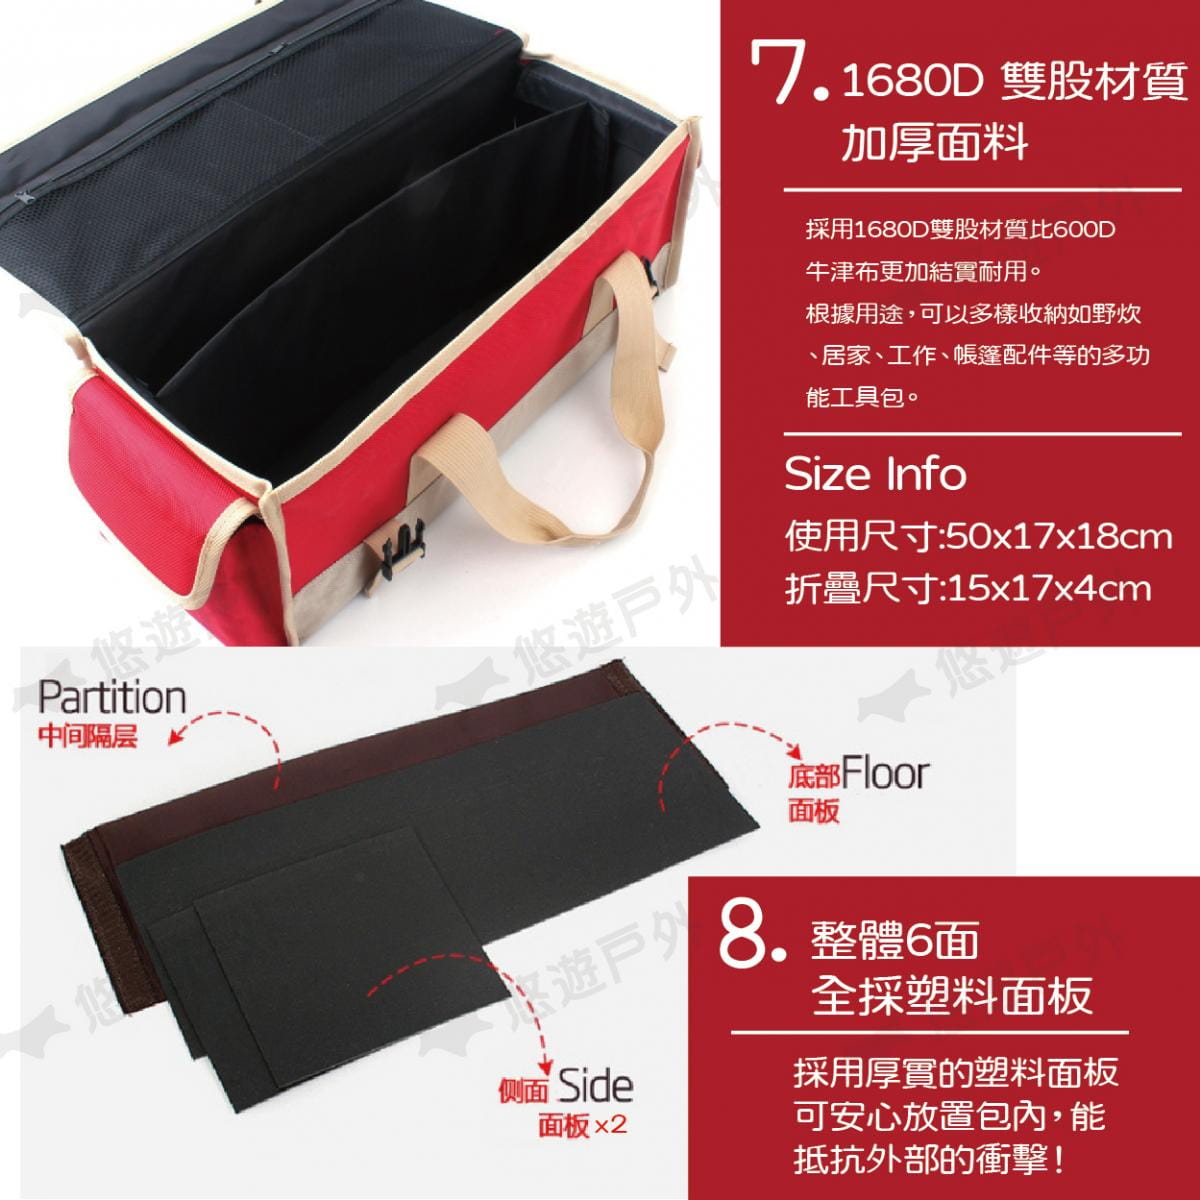 【CLS】韓國 牛津布大容量裝備工具袋 紅色 1680D 牛津布 裝備袋 工具包 工具袋 居家 露營 4